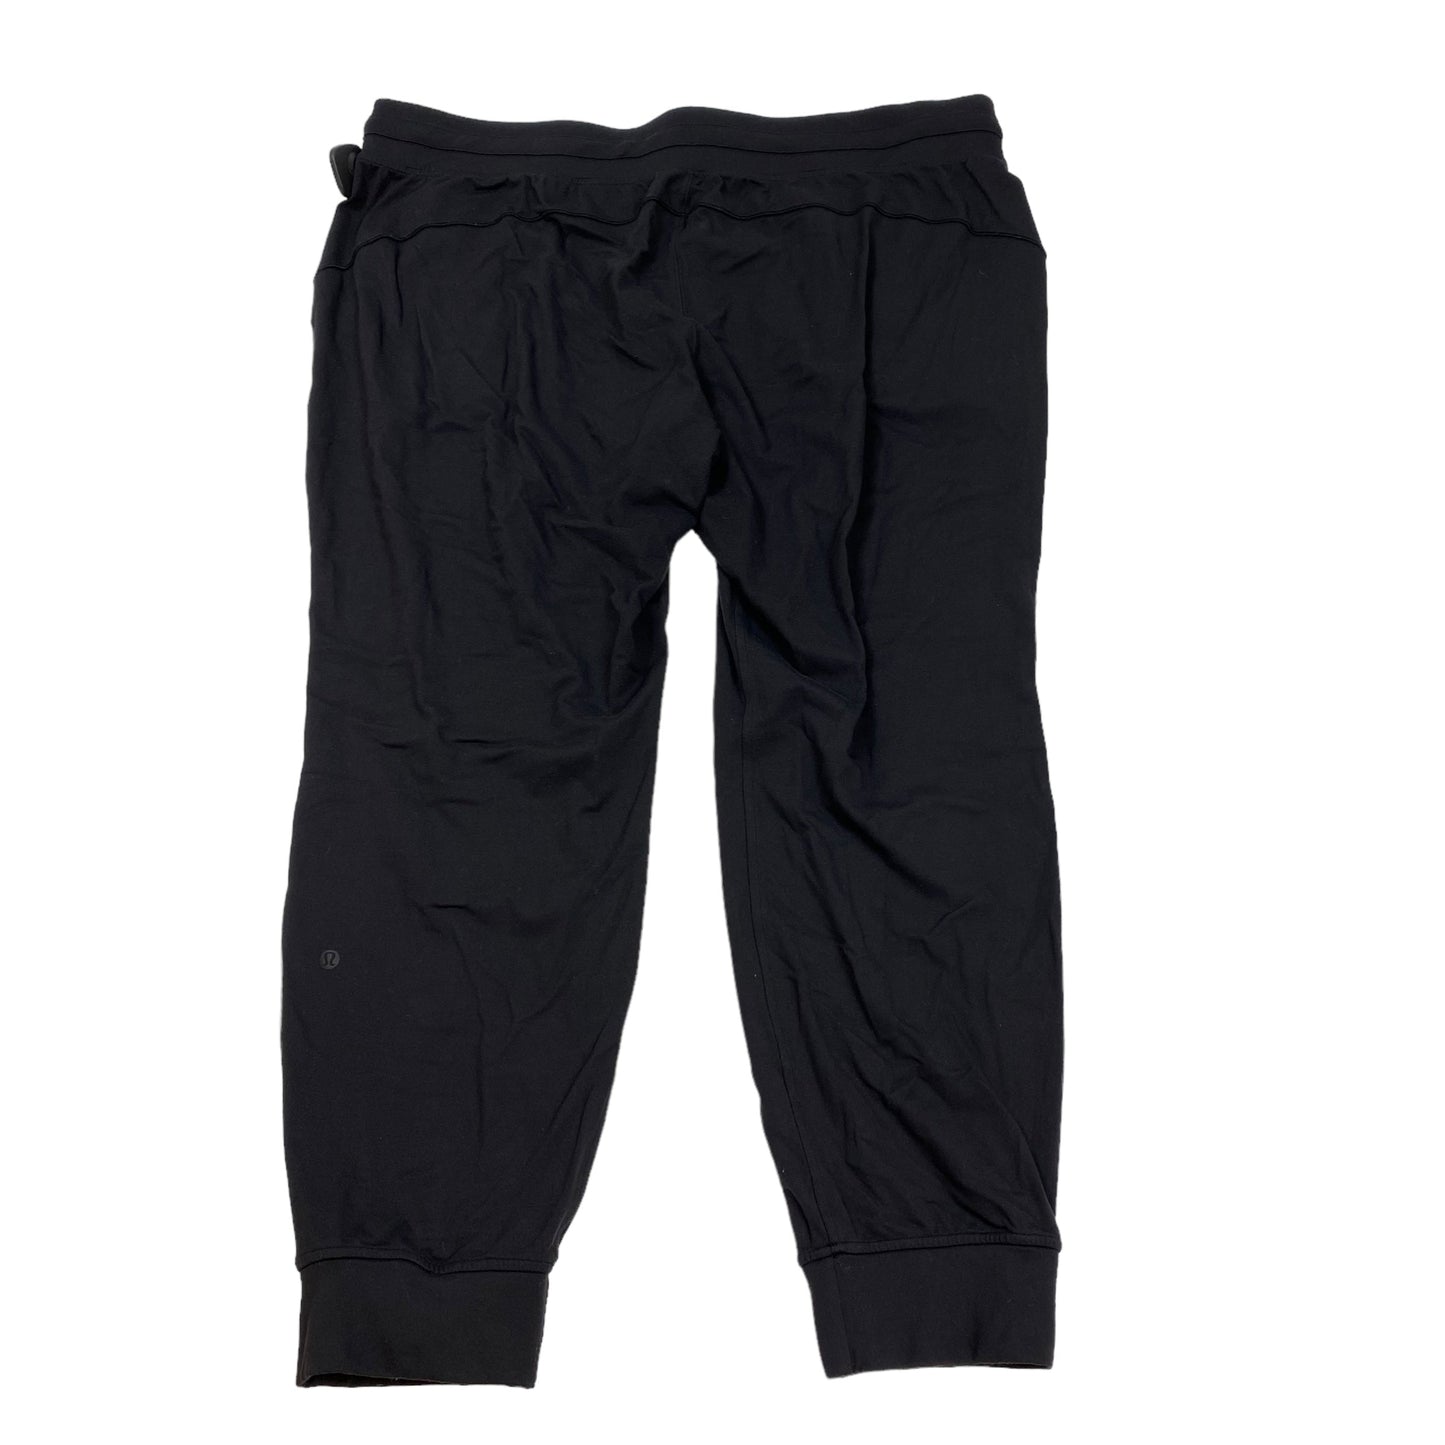 Black Athletic Pants Lululemon, Size 20